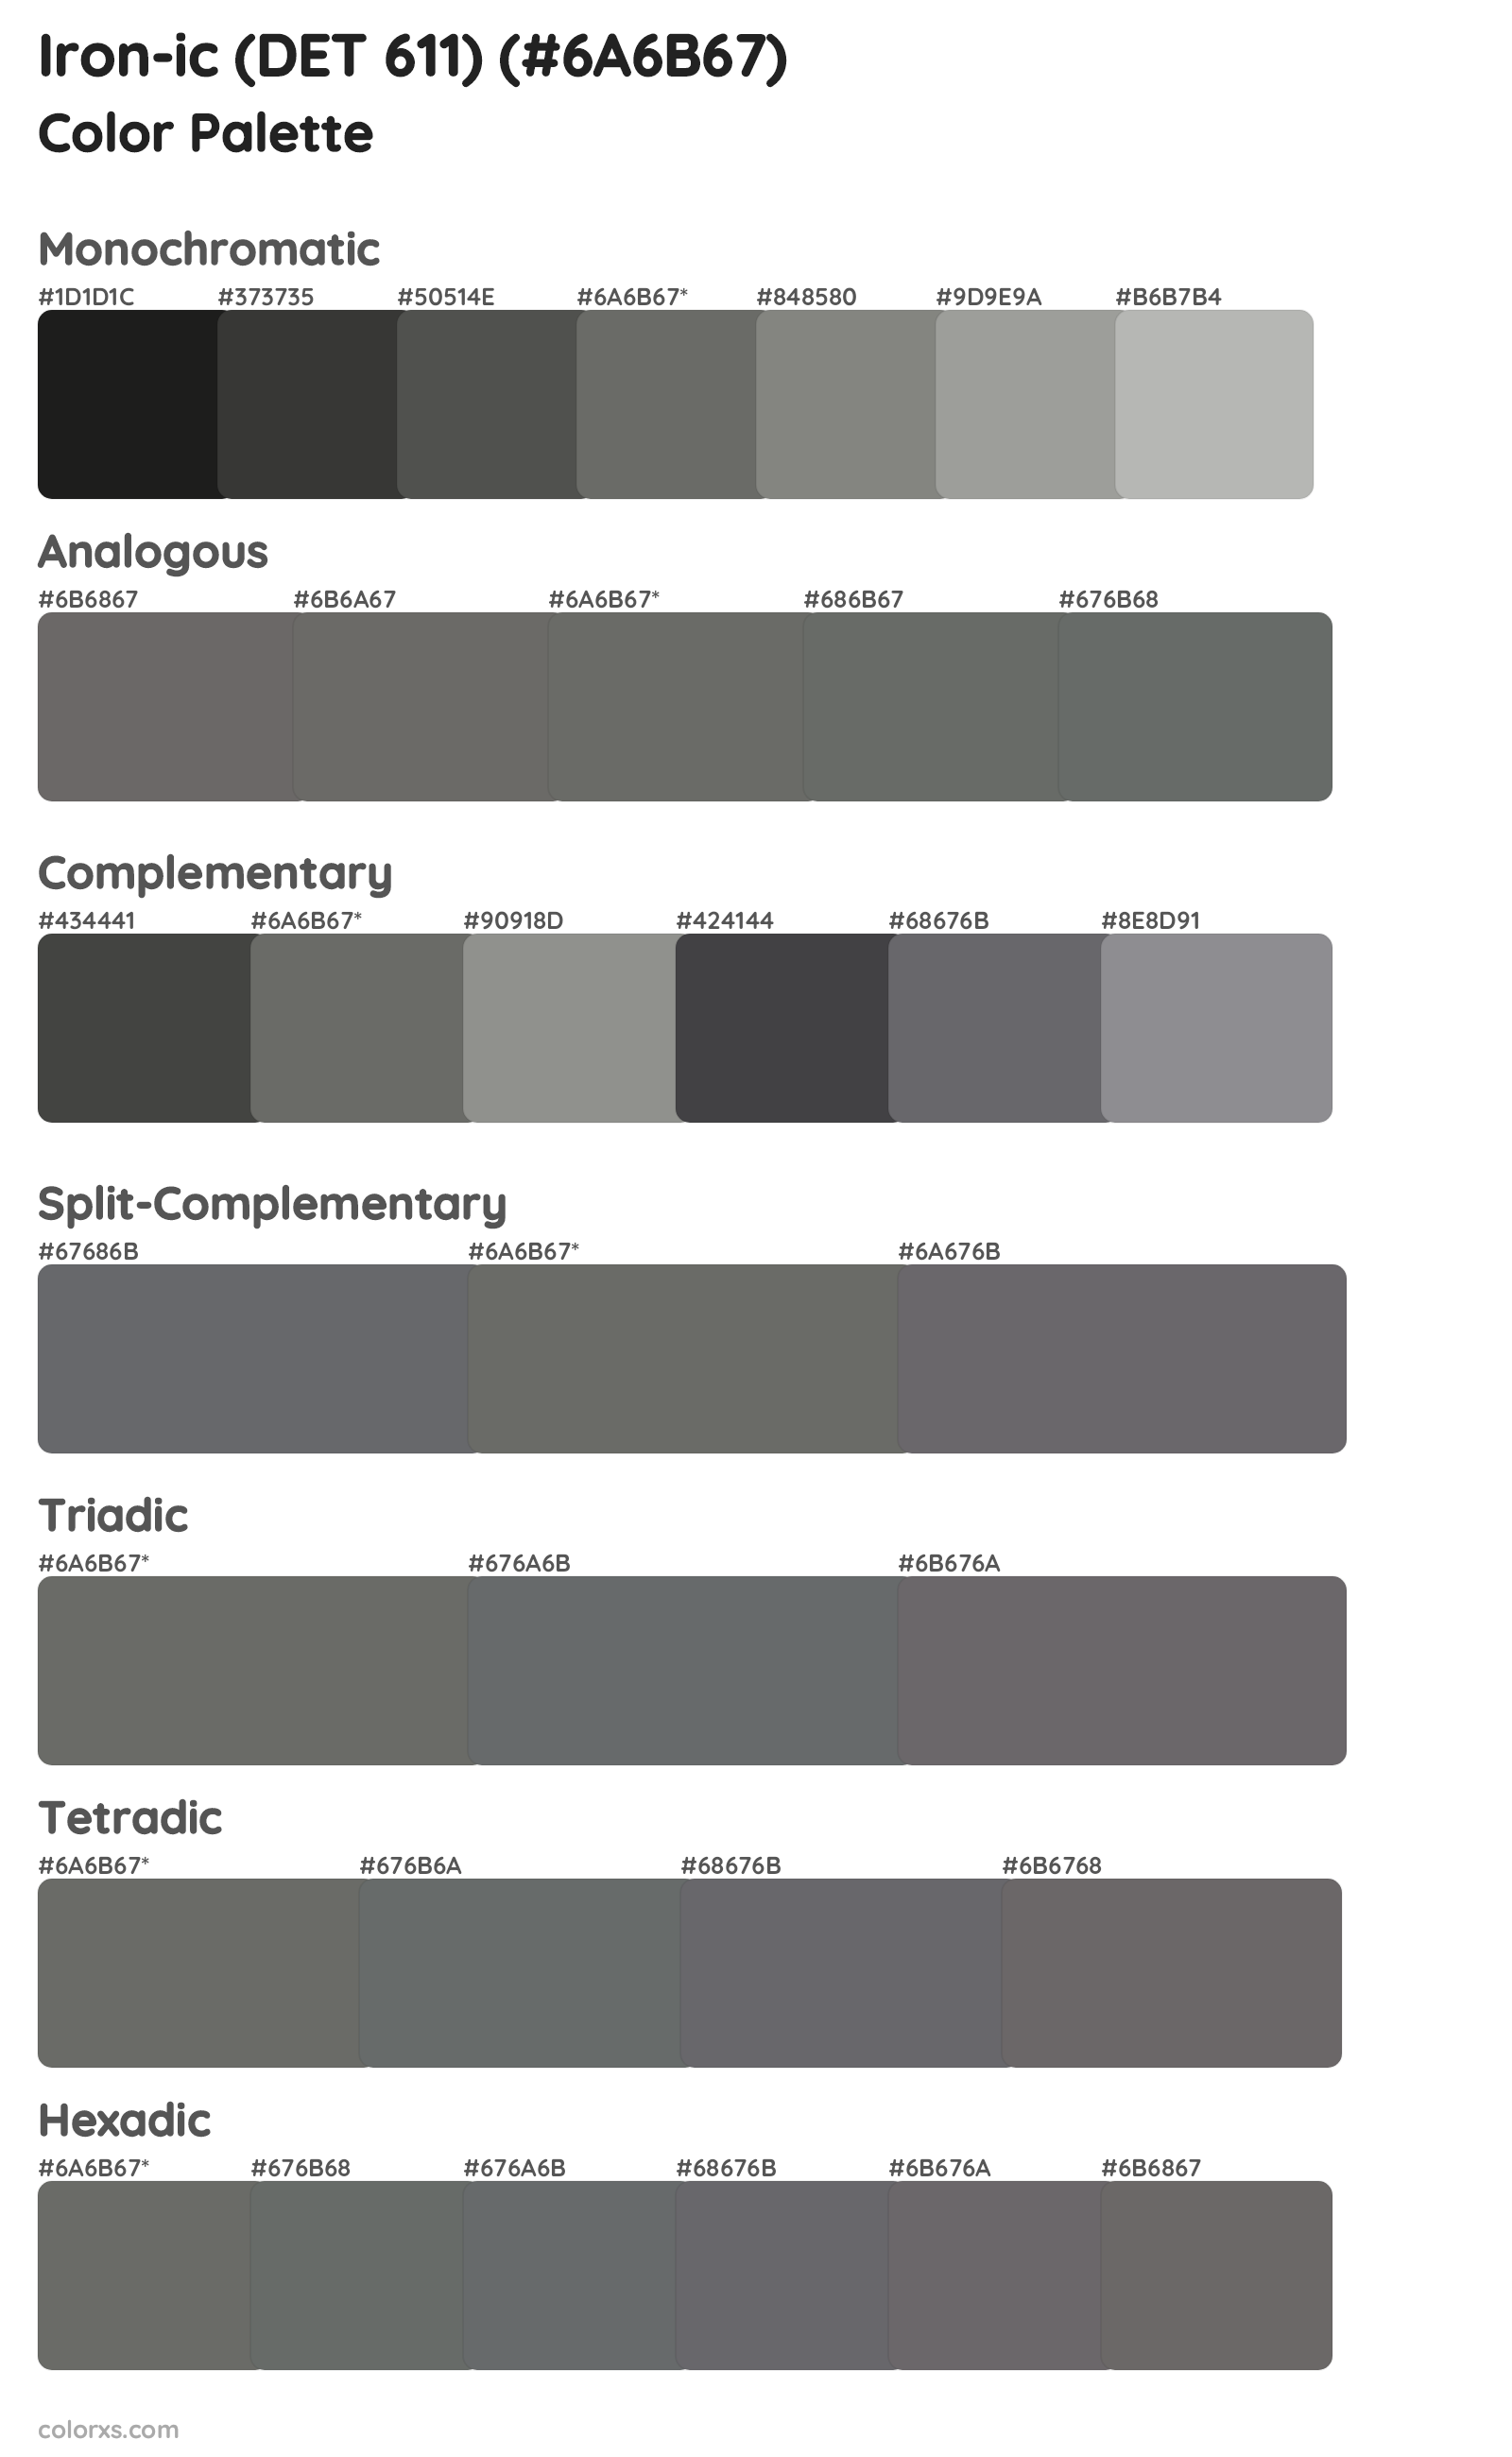 Iron-ic (DET 611) Color Scheme Palettes